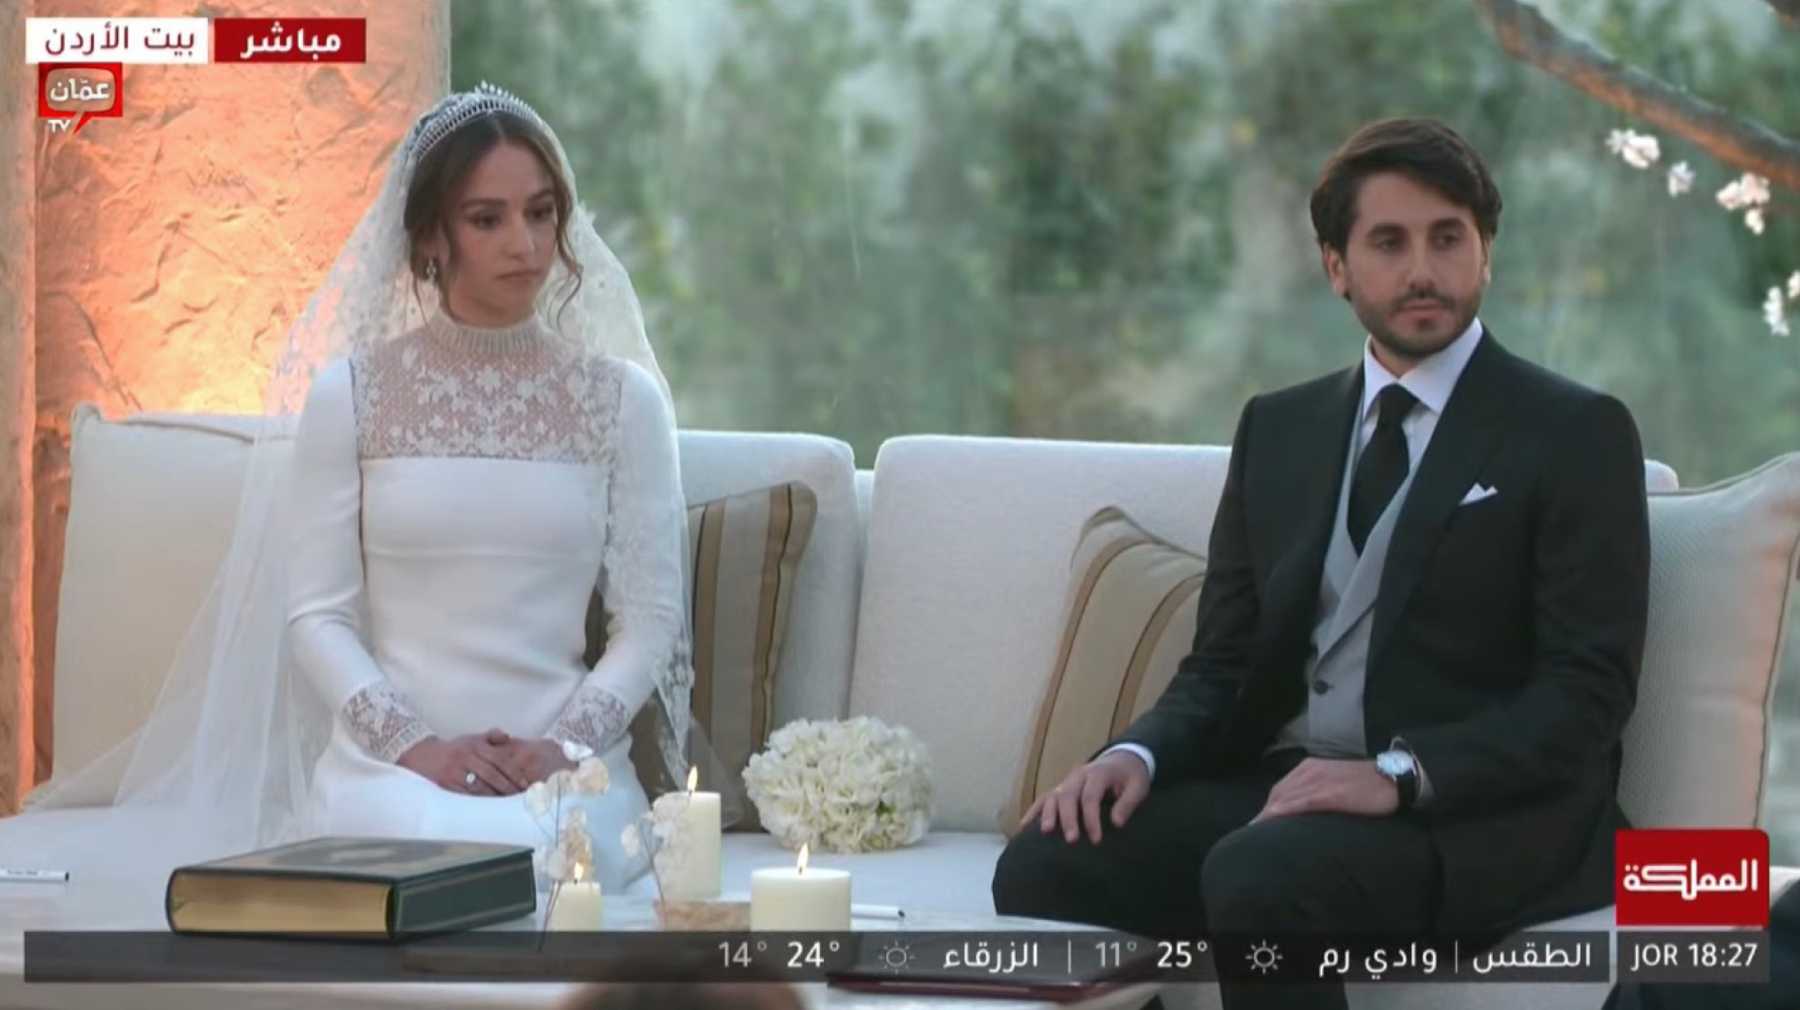 Iman de Jordania junto a su esposo en el día de su boda / TV Jordania 